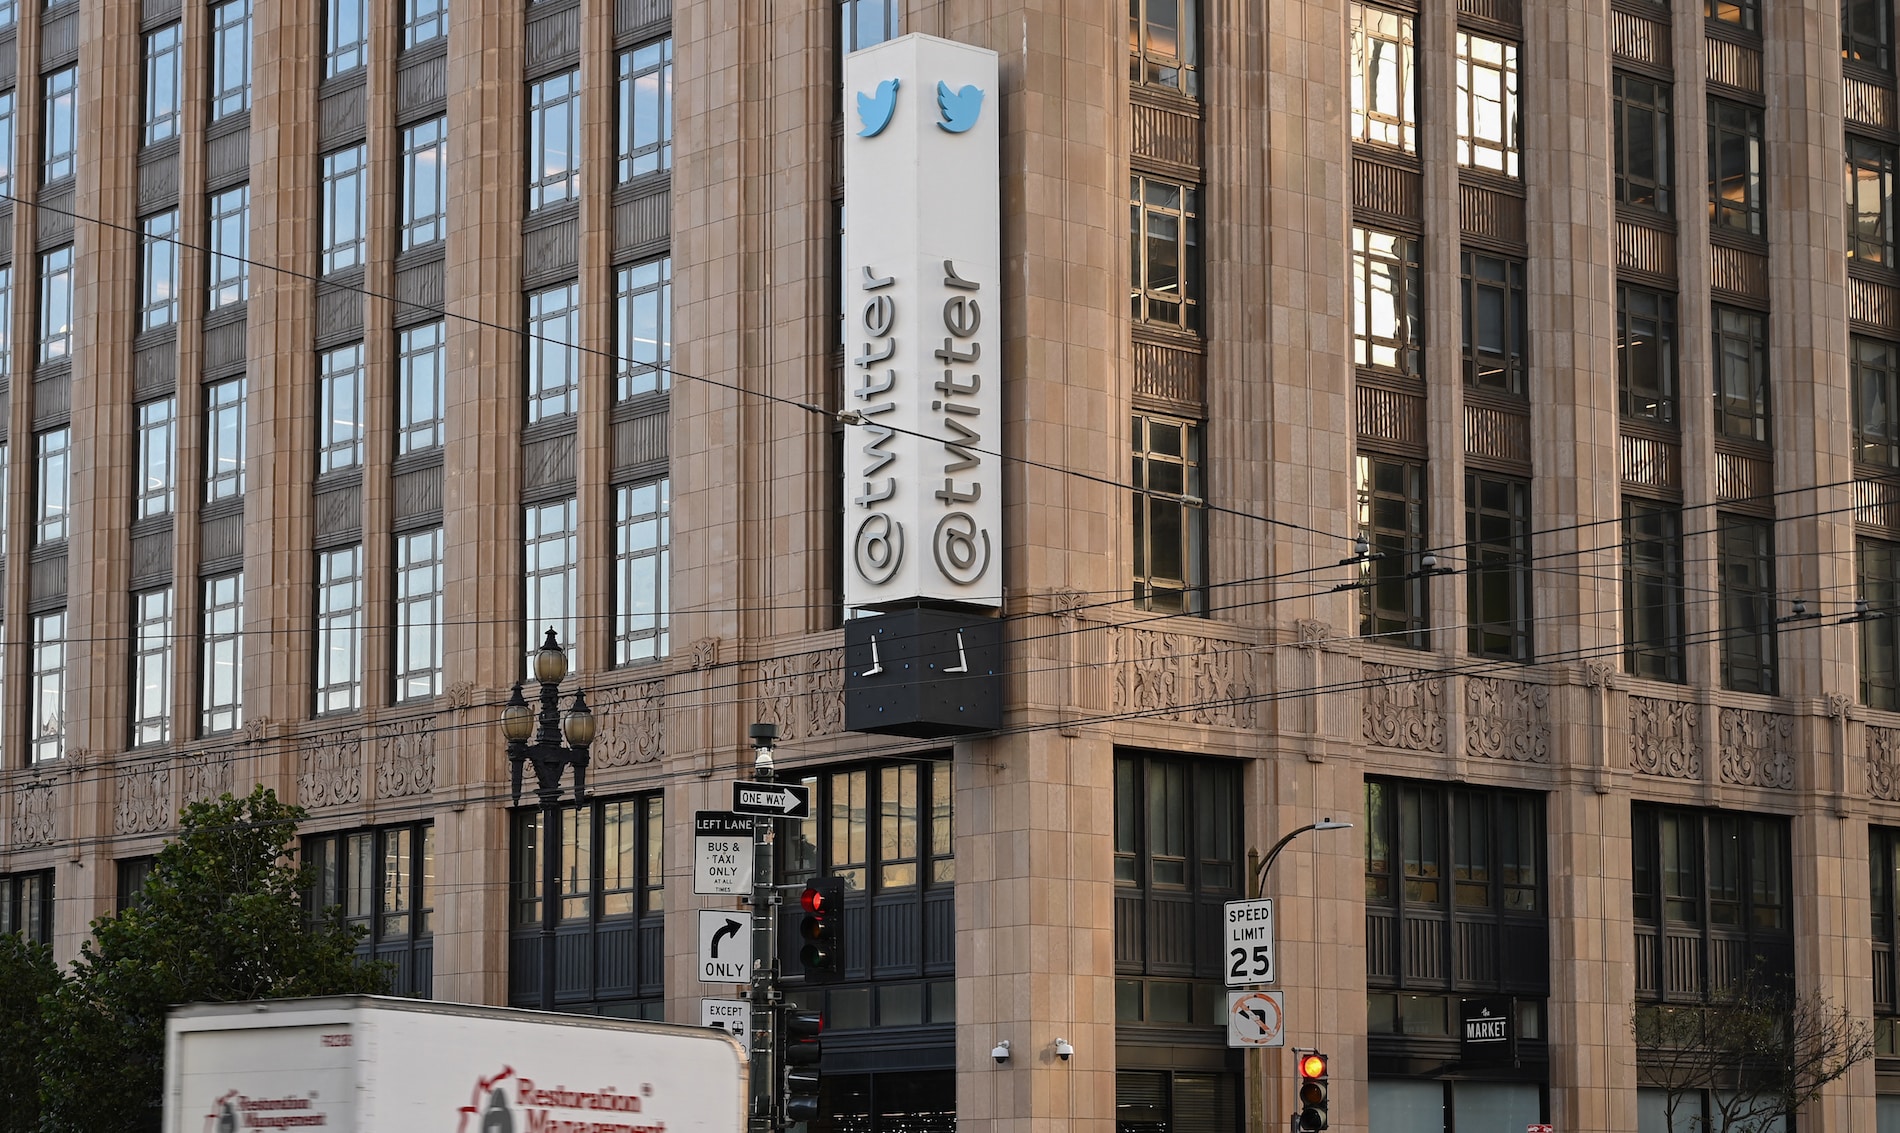 Twitter despide a “cerca del 50%” de sus empleados en el mundo, revela documento interno